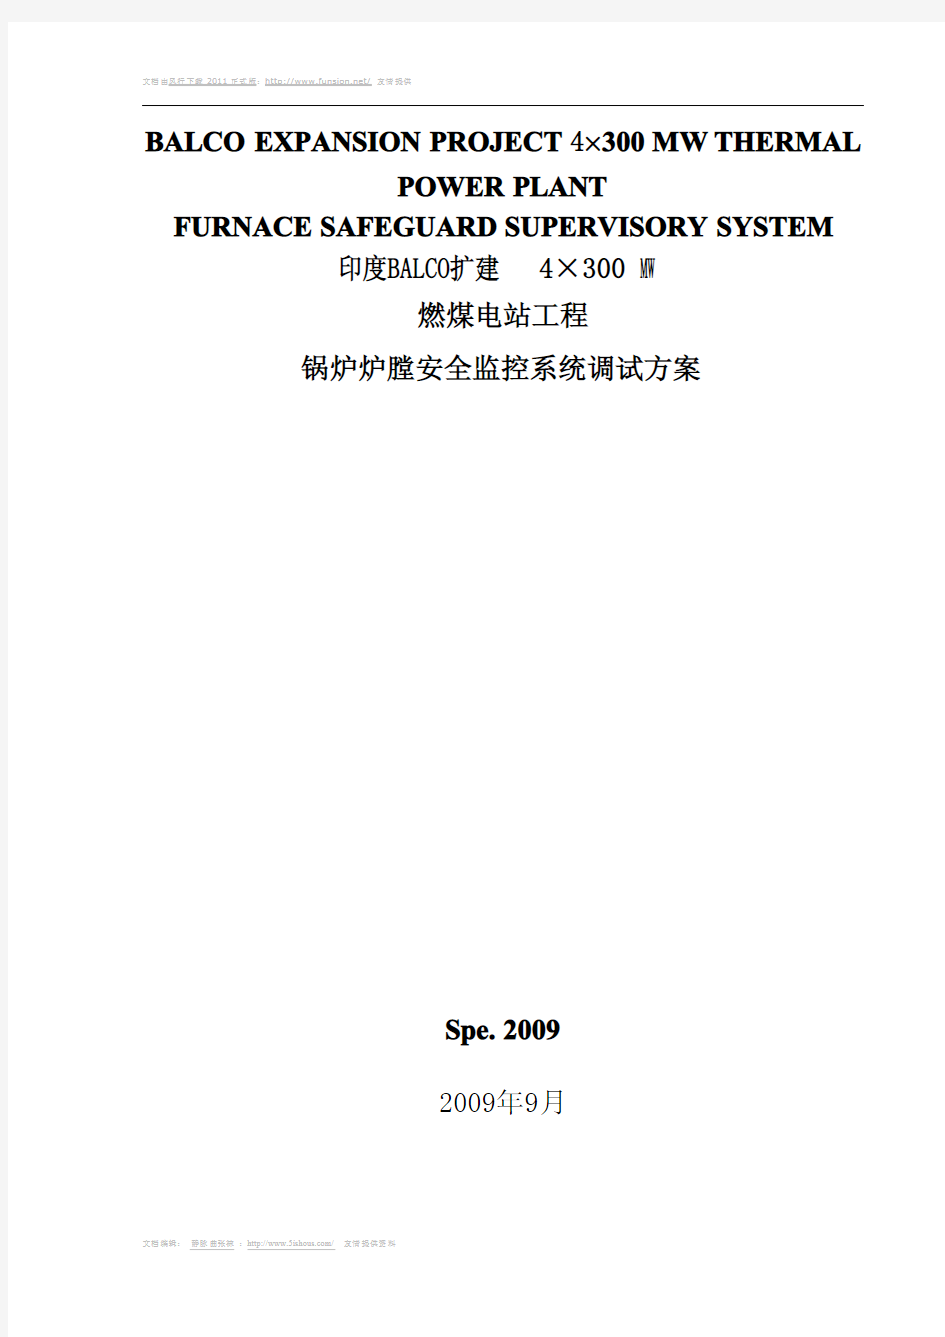 锅炉炉膛安全监控系统(FSSS)调试方案